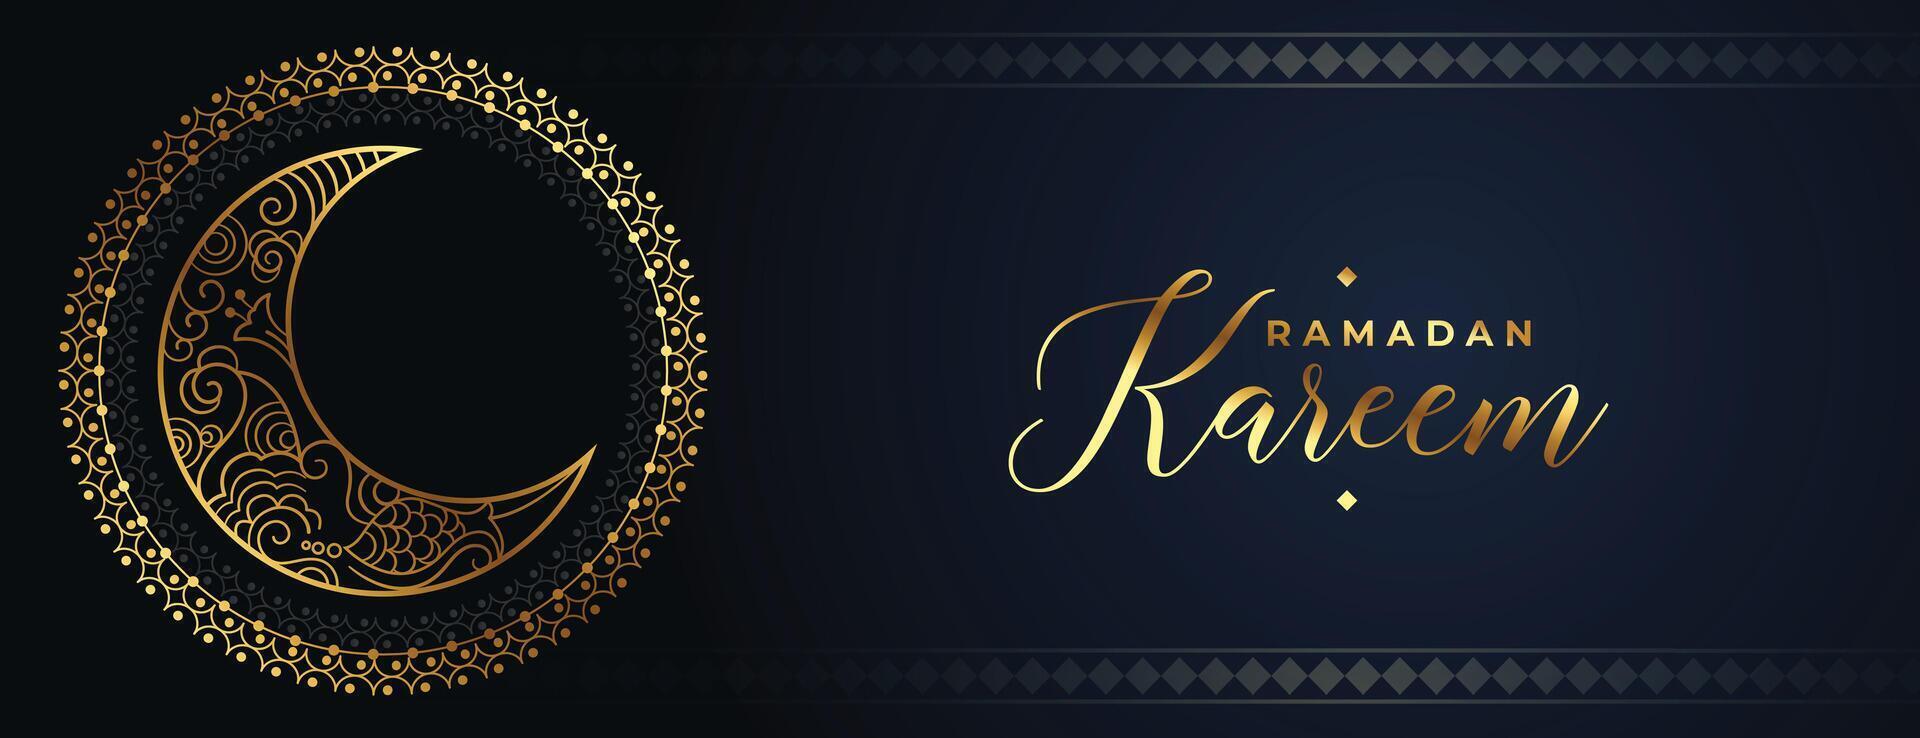 décoratif Ramadan kareem arabe style d'or lune bannière vecteur